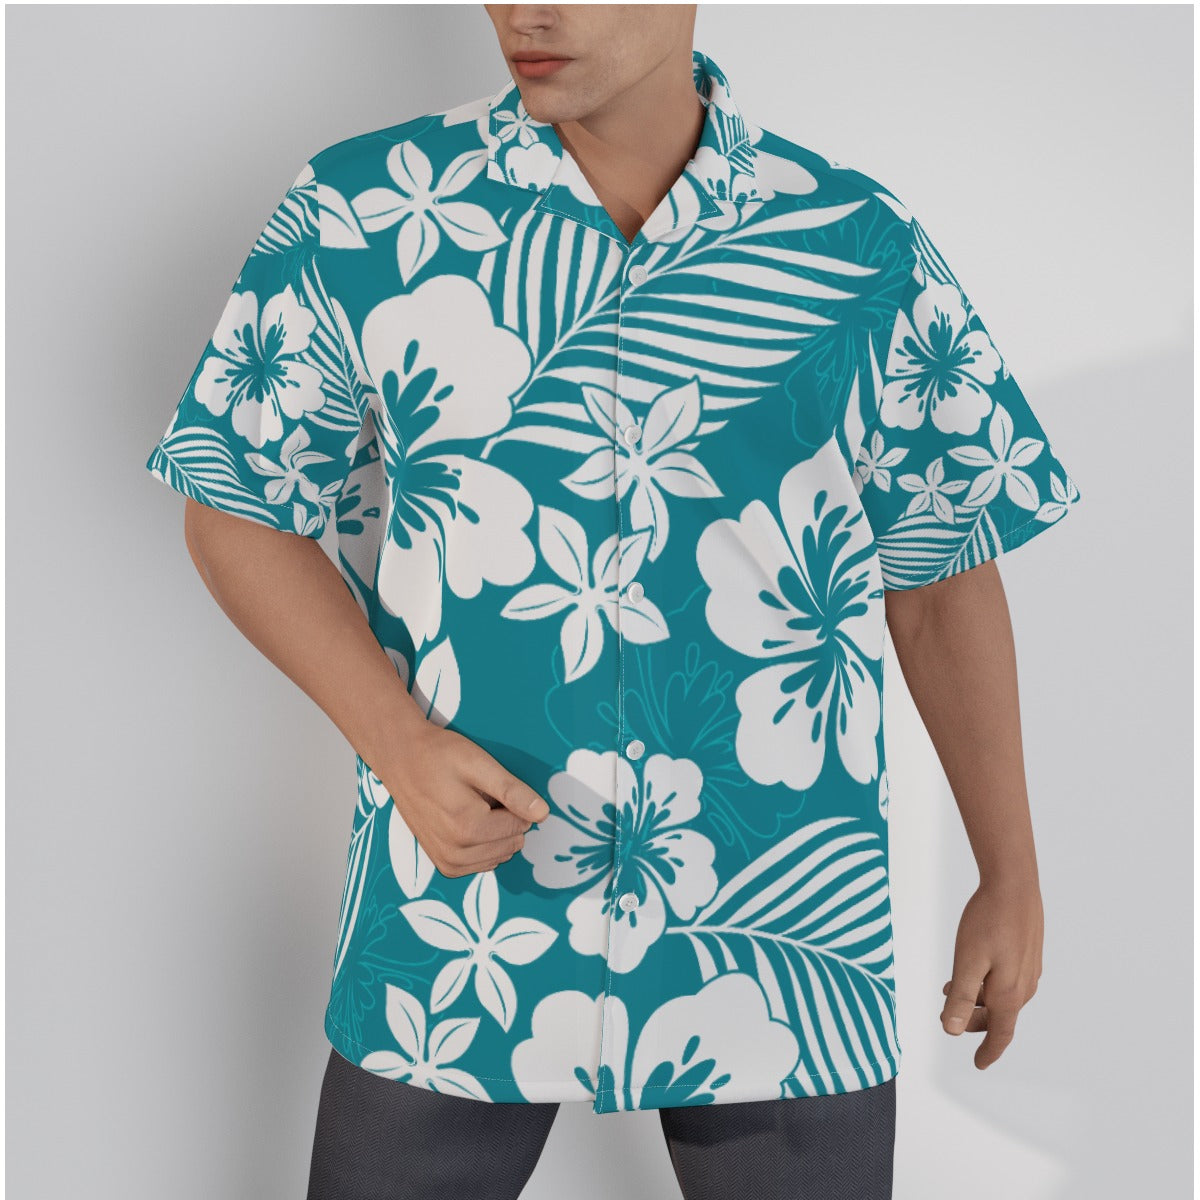 Men's Classic Hawaiian Shirt, Men's Aloha Shirt